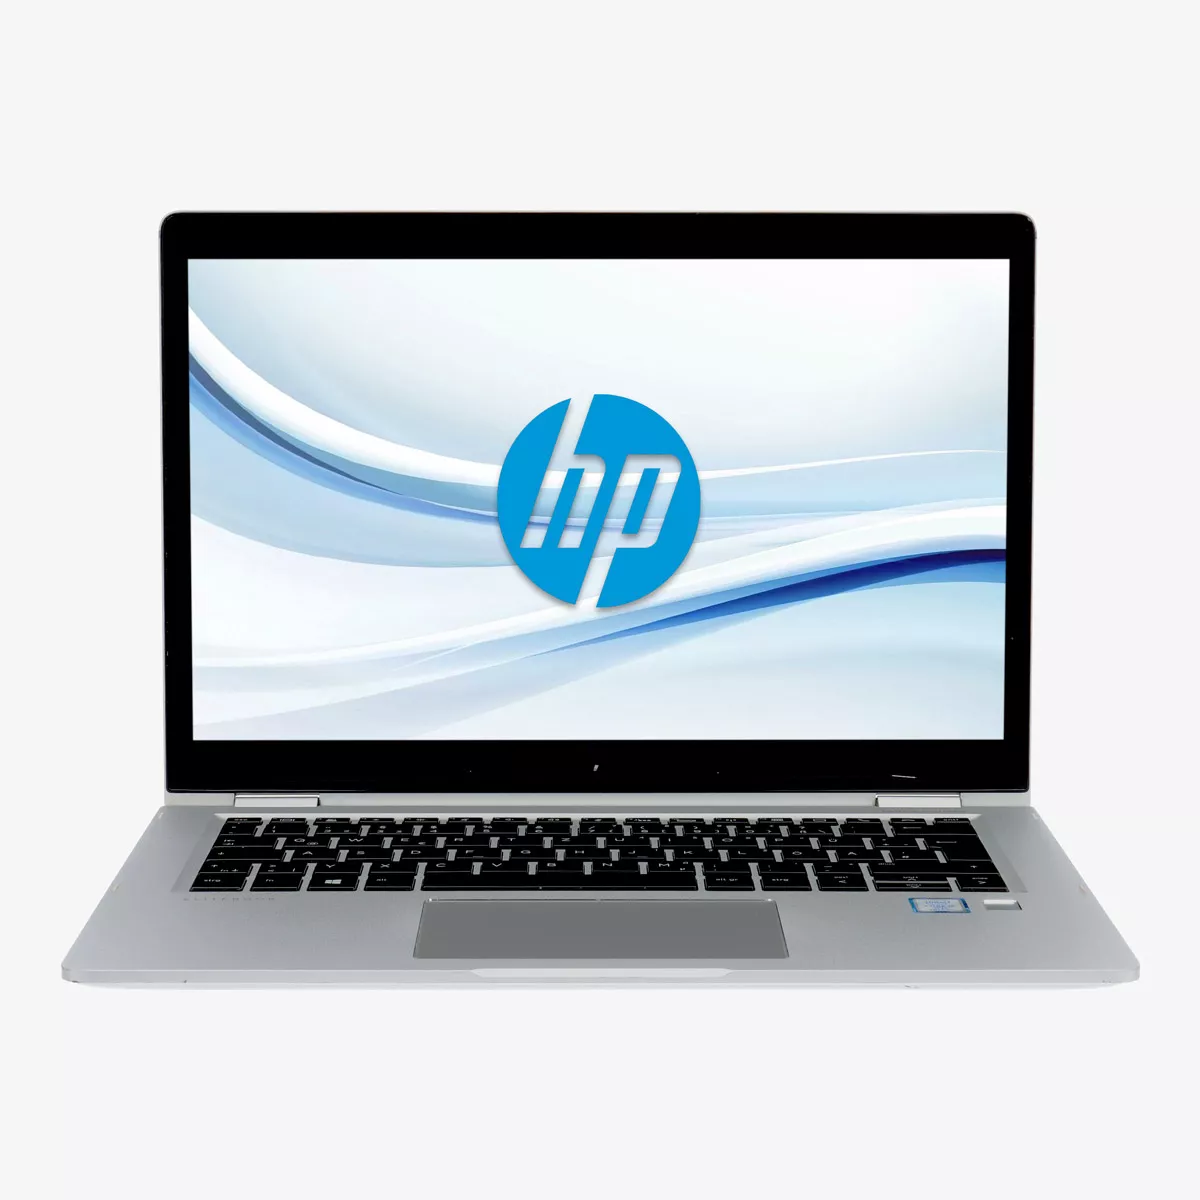 HP EliteBook x360 1030 G2 Core i5 7300U 2,60 GHz 240 GB M.2 SSD Touchscreen Webcam A+